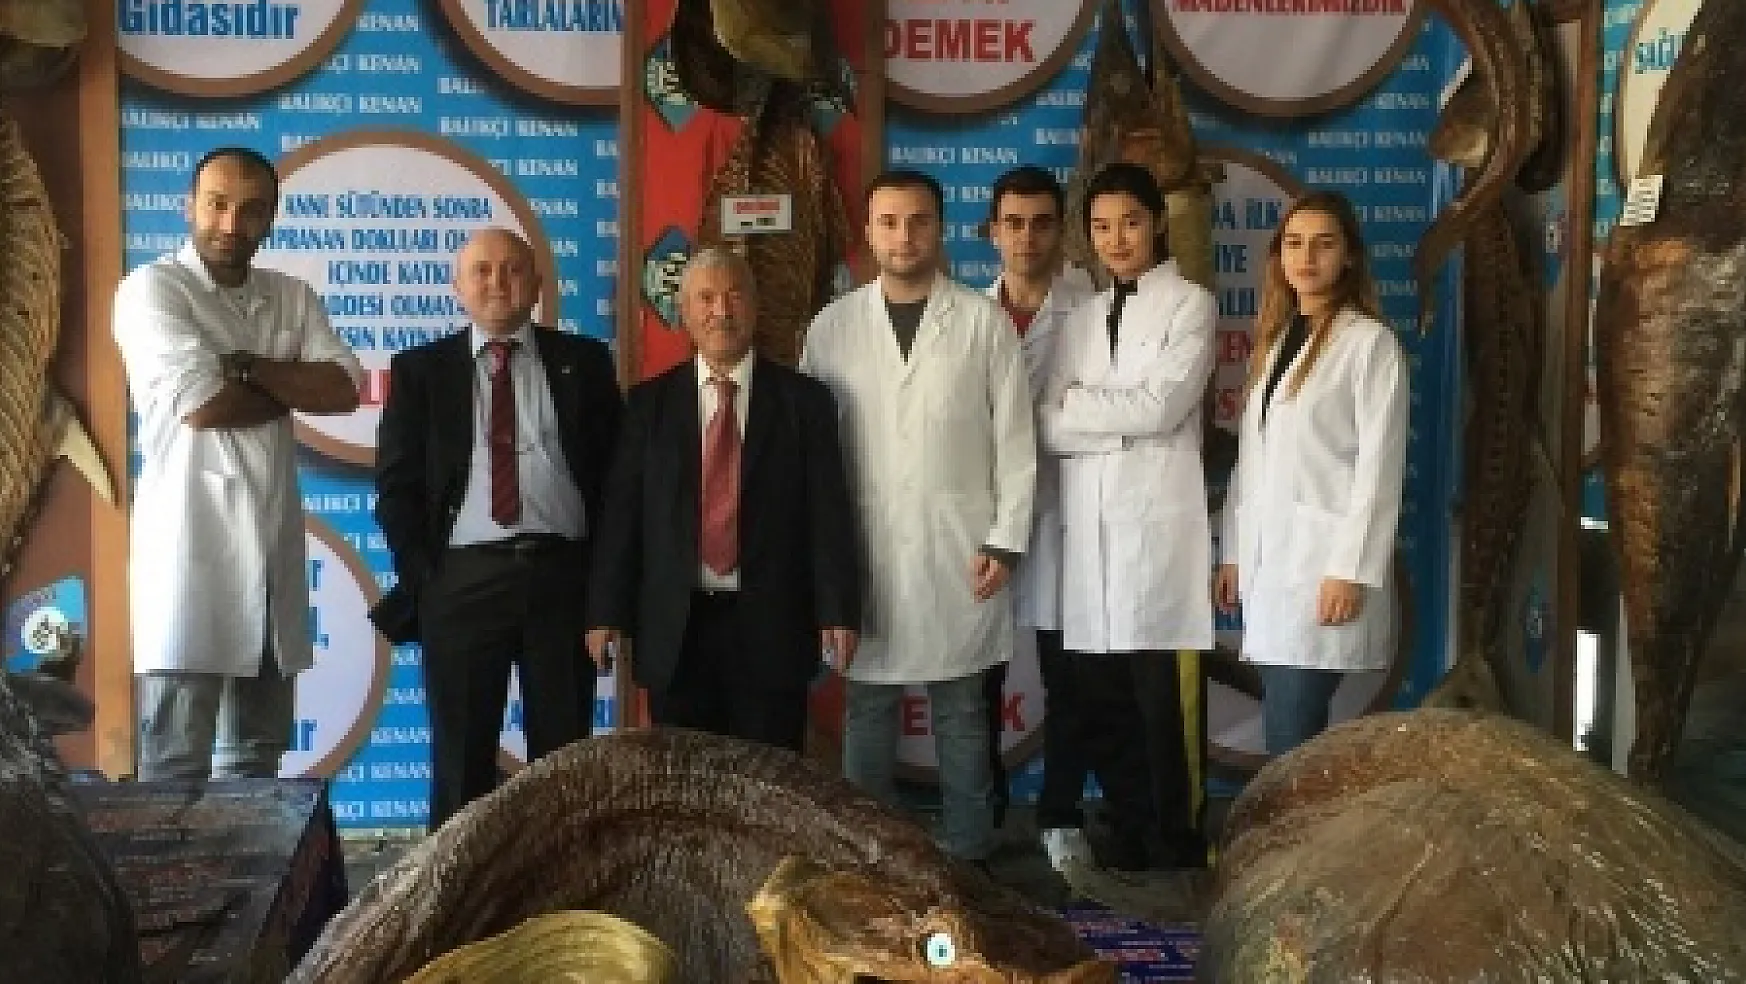 Türkiye Deniz Canlıları Müzesi, üniversitelerin ilgi odağı oldu